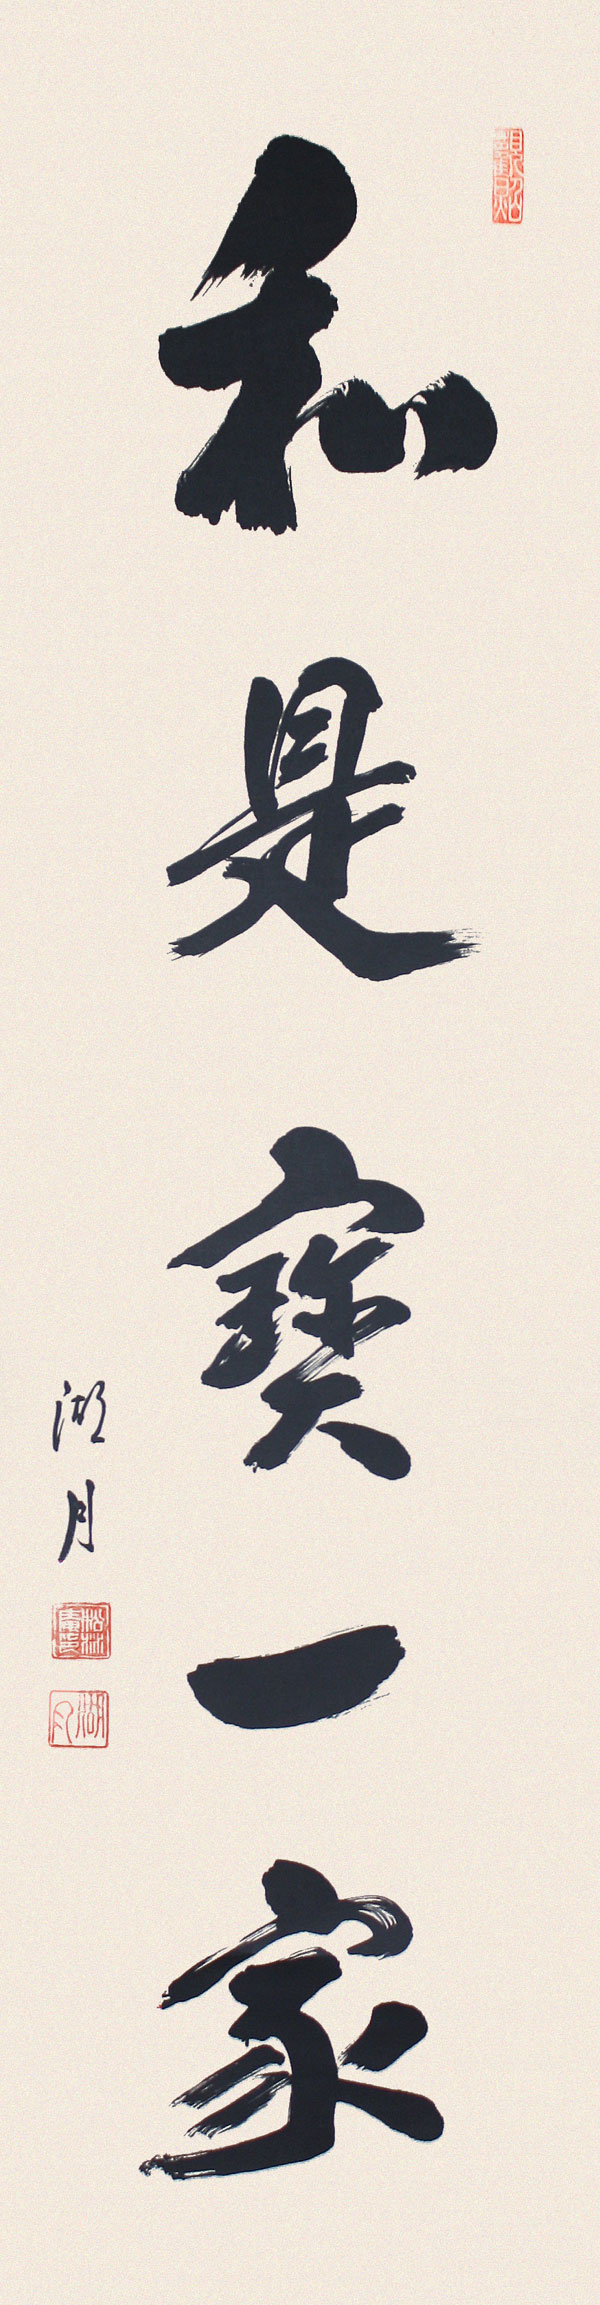 Wa-Kore-Ichikaho-Textrolle-KAK050B